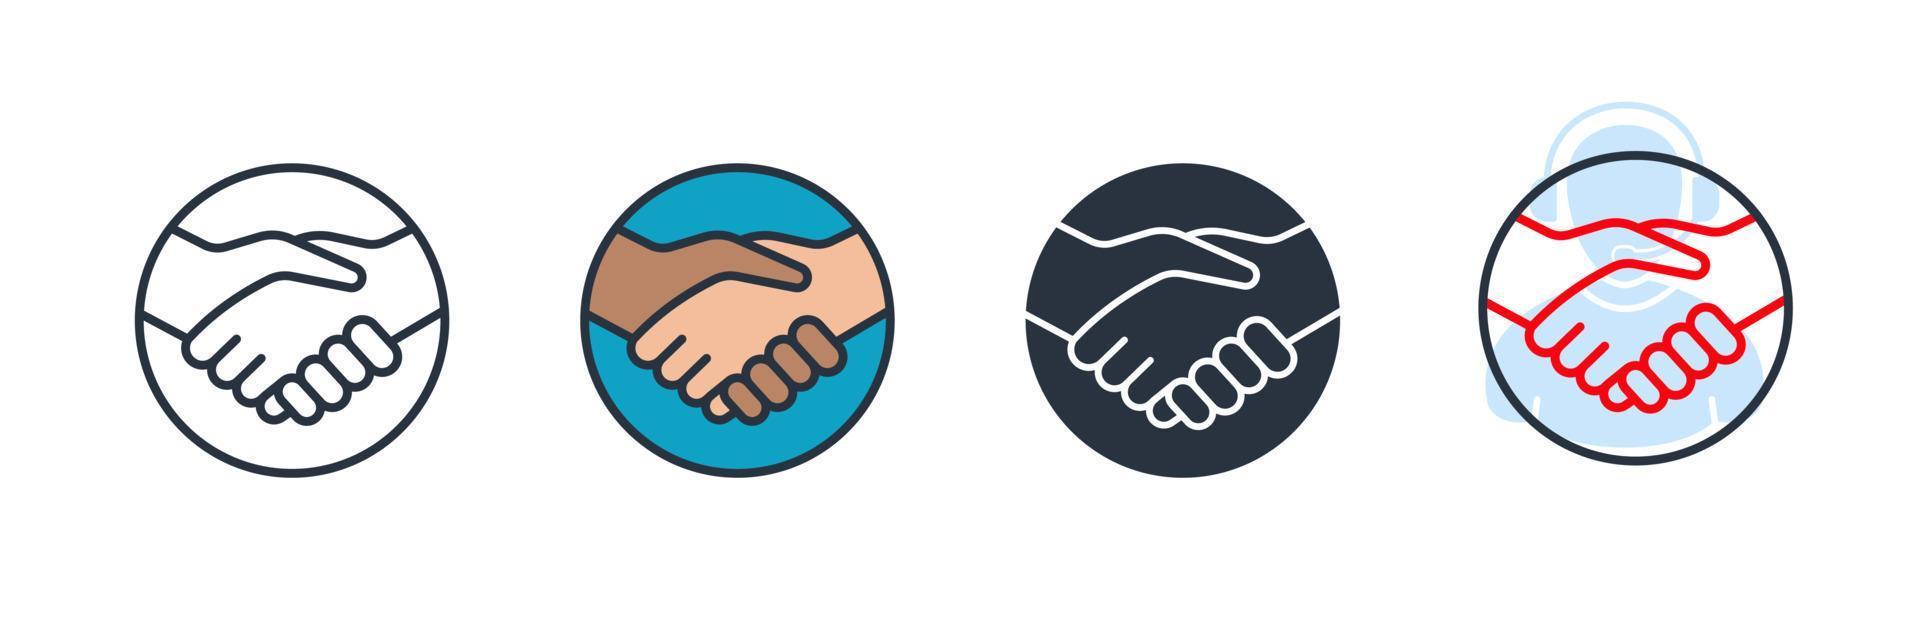 Handshake-Symbol-Logo-Vektor-Illustration. partnerschaftssymbolvorlage für grafik- und webdesignsammlung vektor